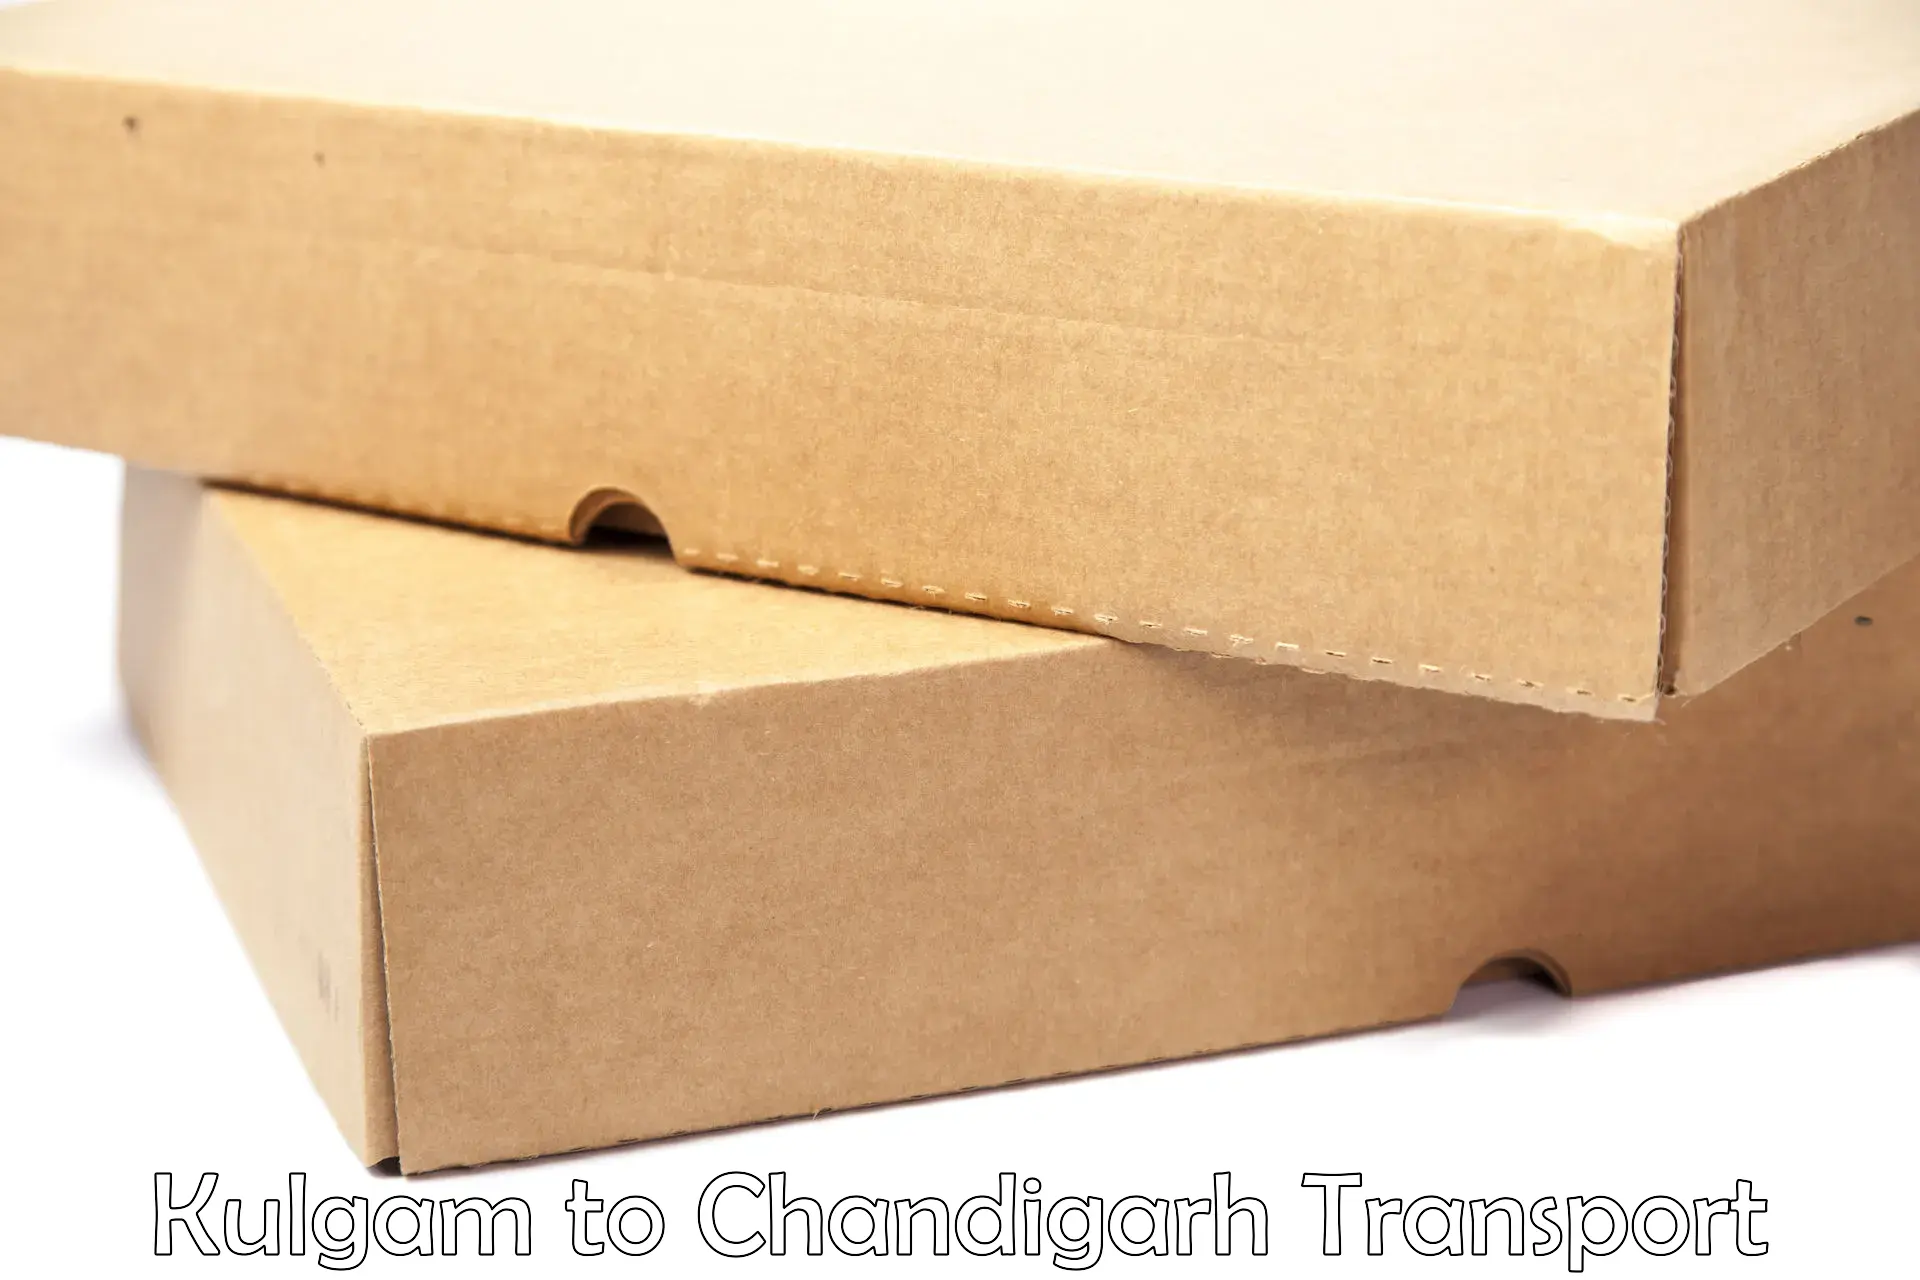 Daily transport service Kulgam to Chandigarh